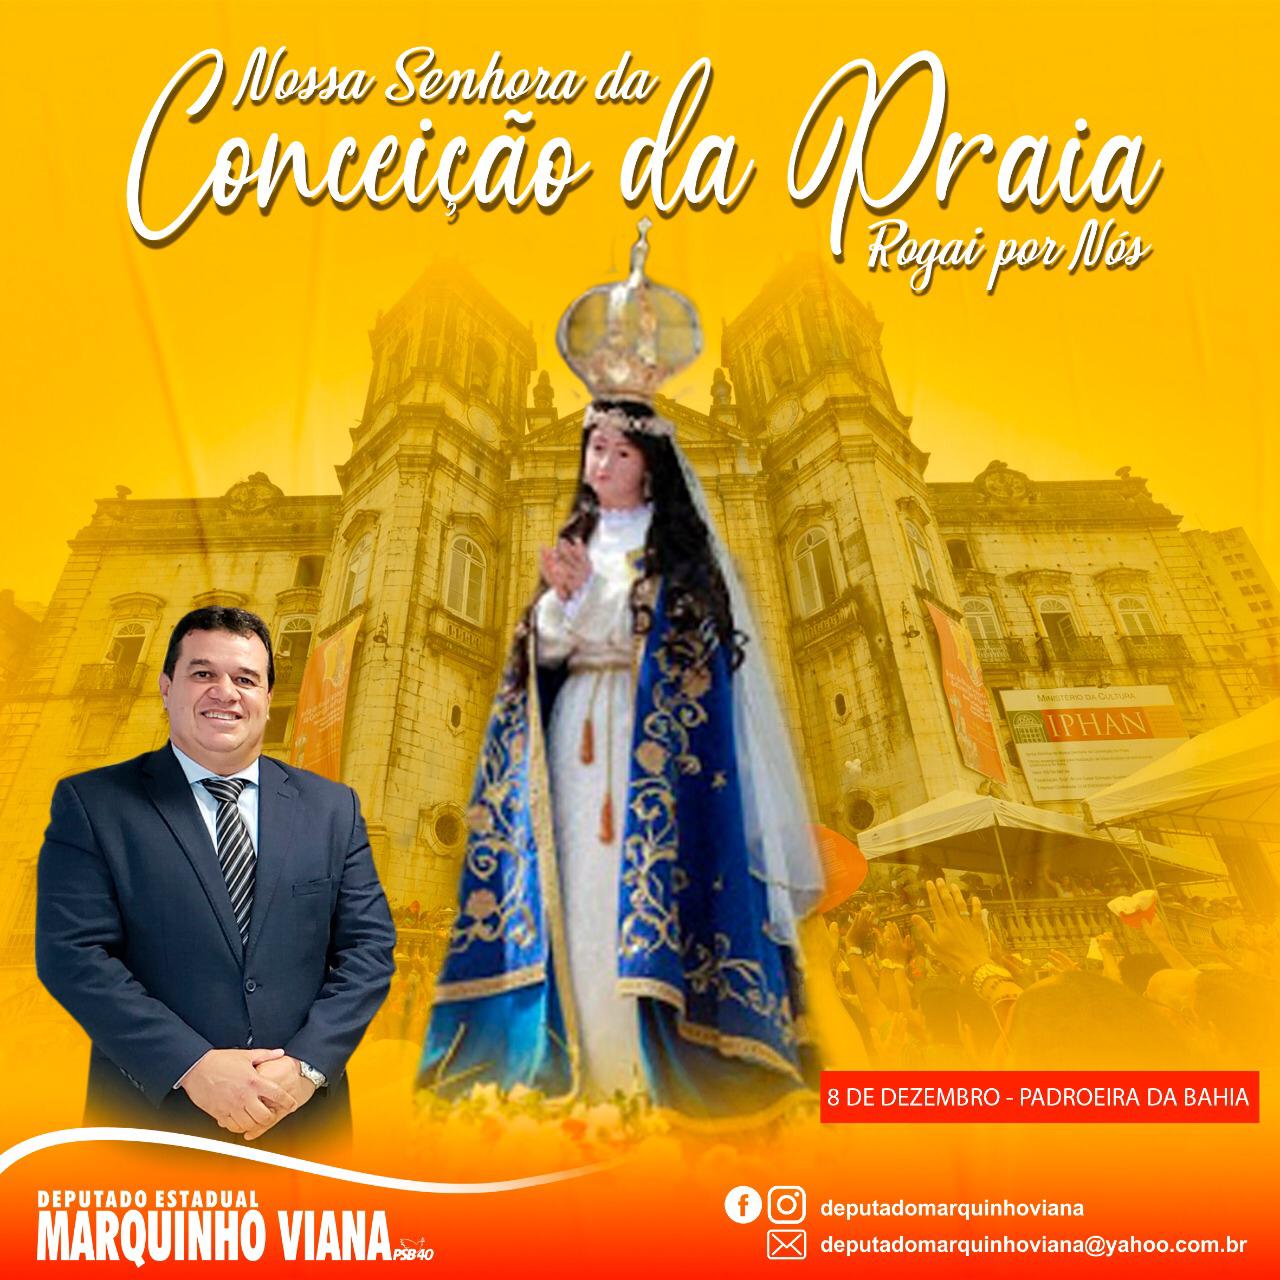 09/12: Deputado Marquinho Viana reverencia Nossa Senhora da Conceição da Praia